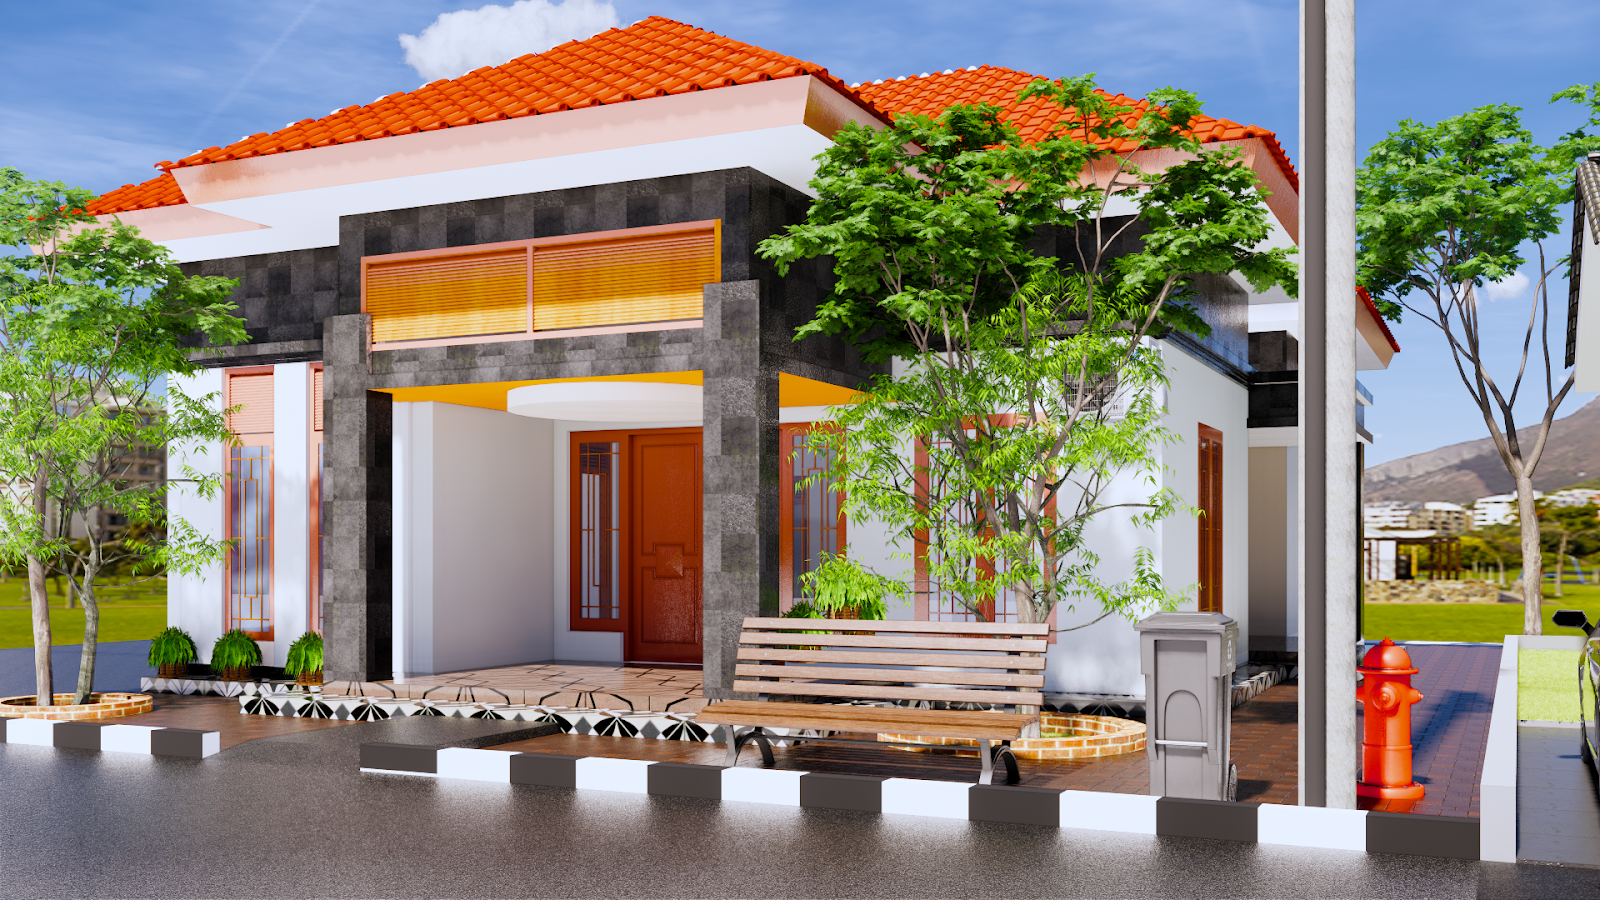 Desain Rumah Minimalis Modern Terbaru Beserta Anggaran Biaya